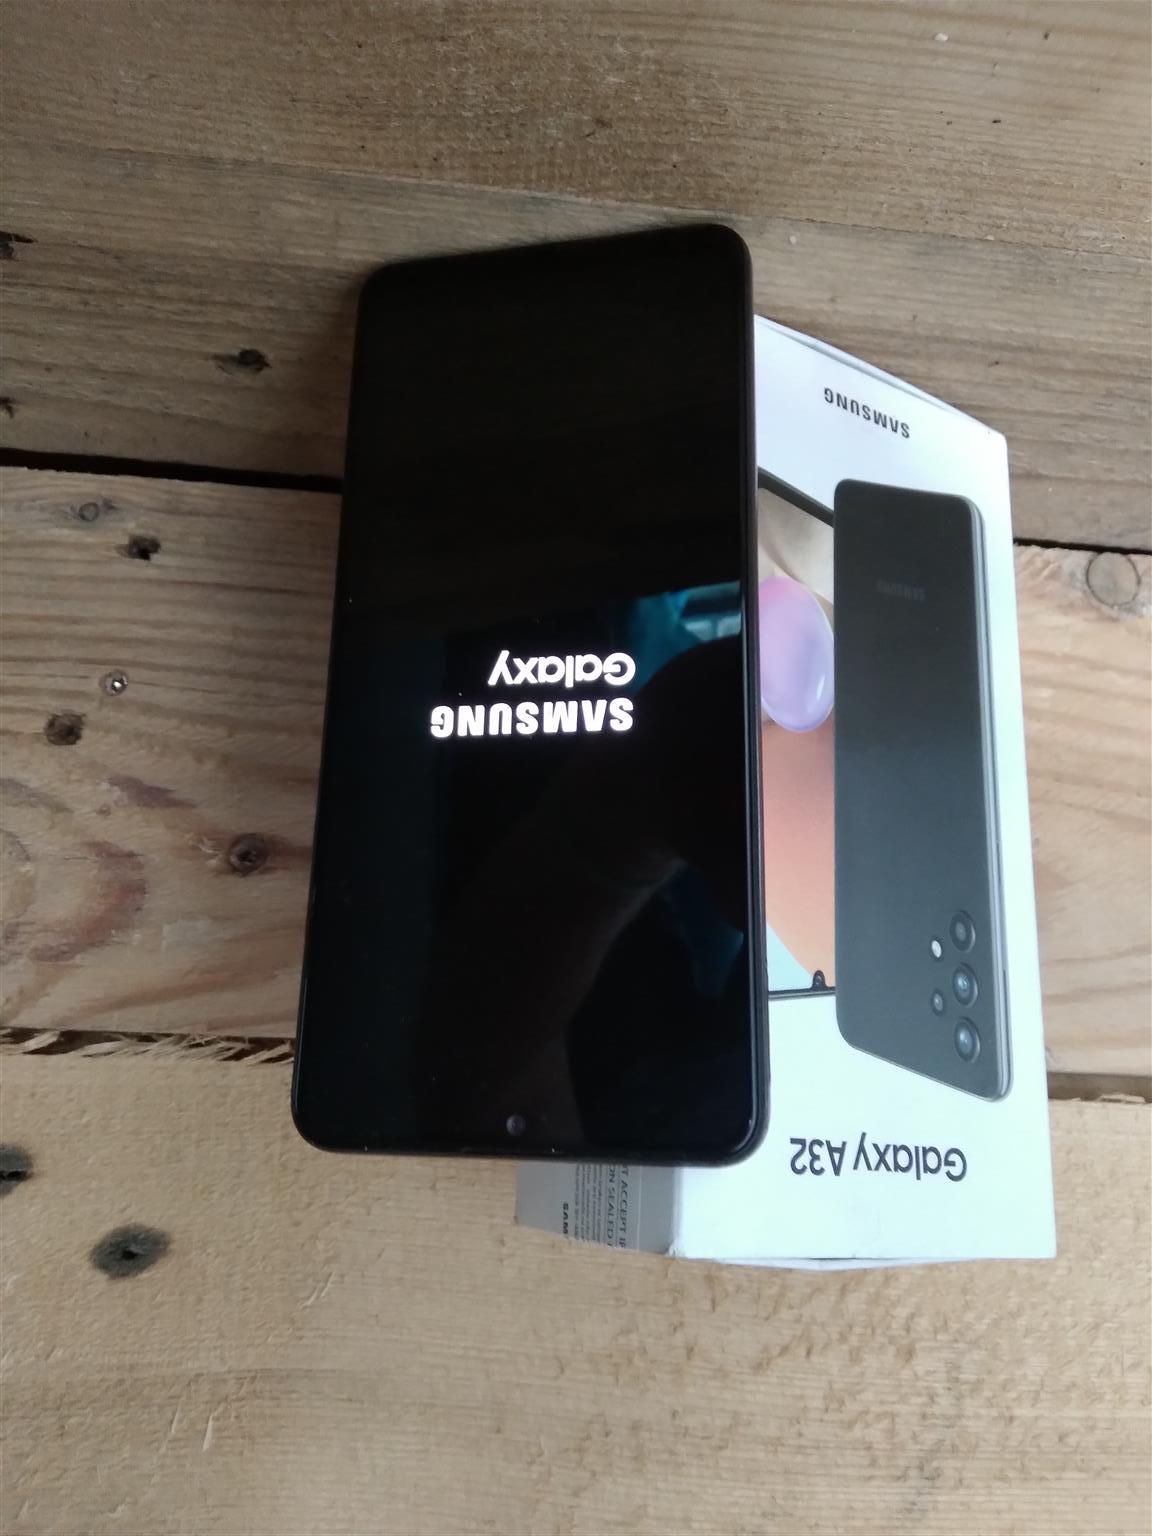 Samsung - Galaxy A32 5G Dual Sim Black